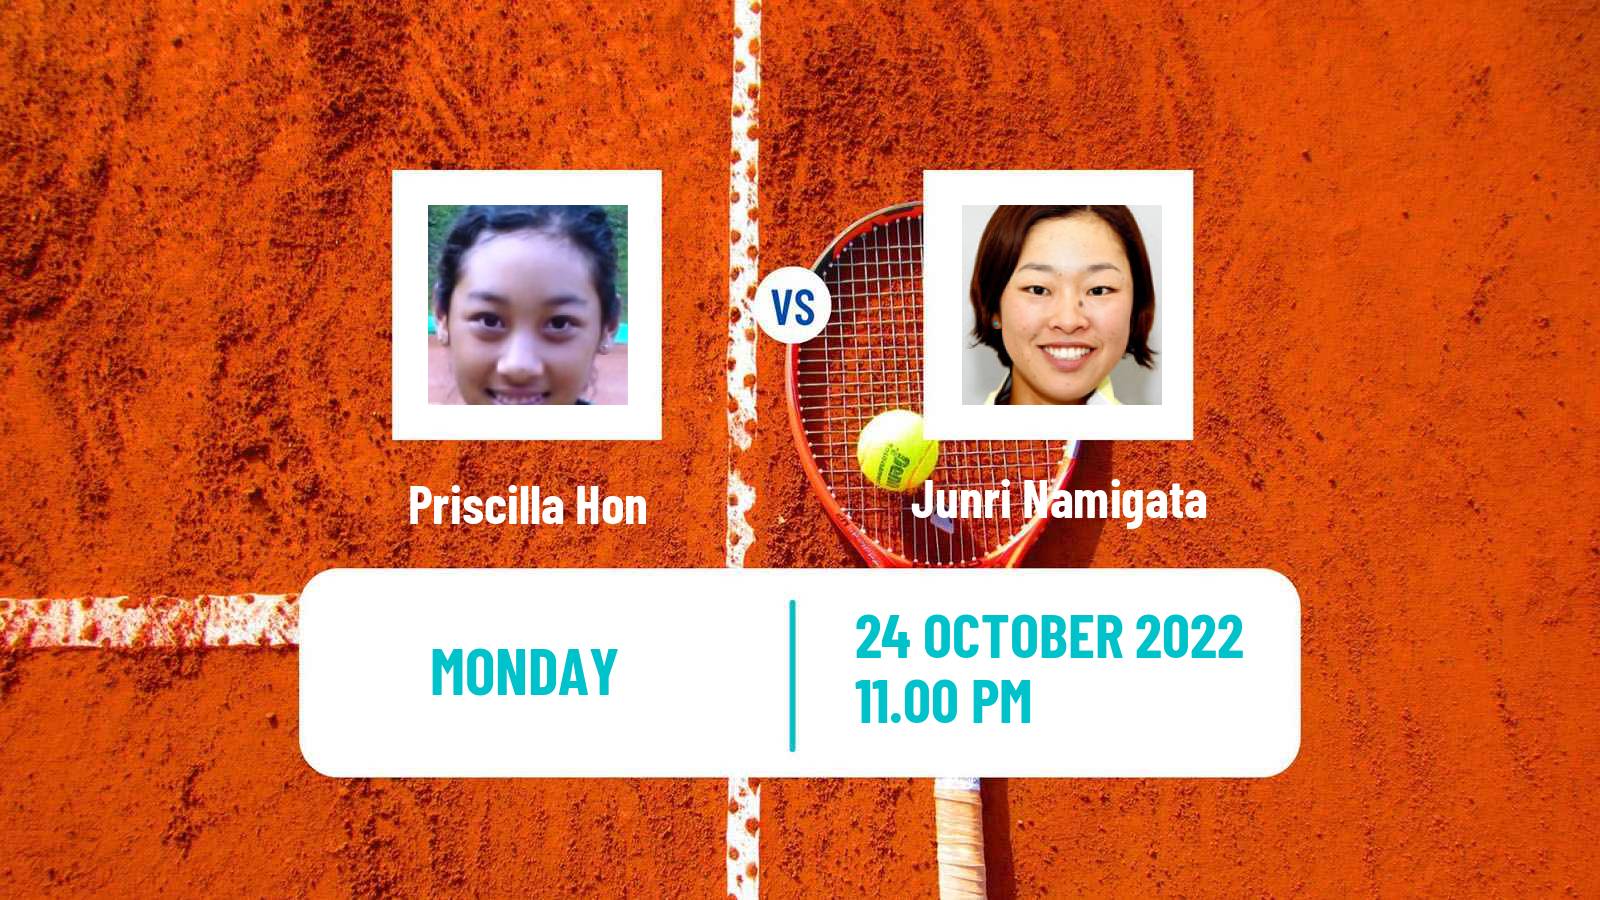 Tennis ITF Tournaments Priscilla Hon - Junri Namigata